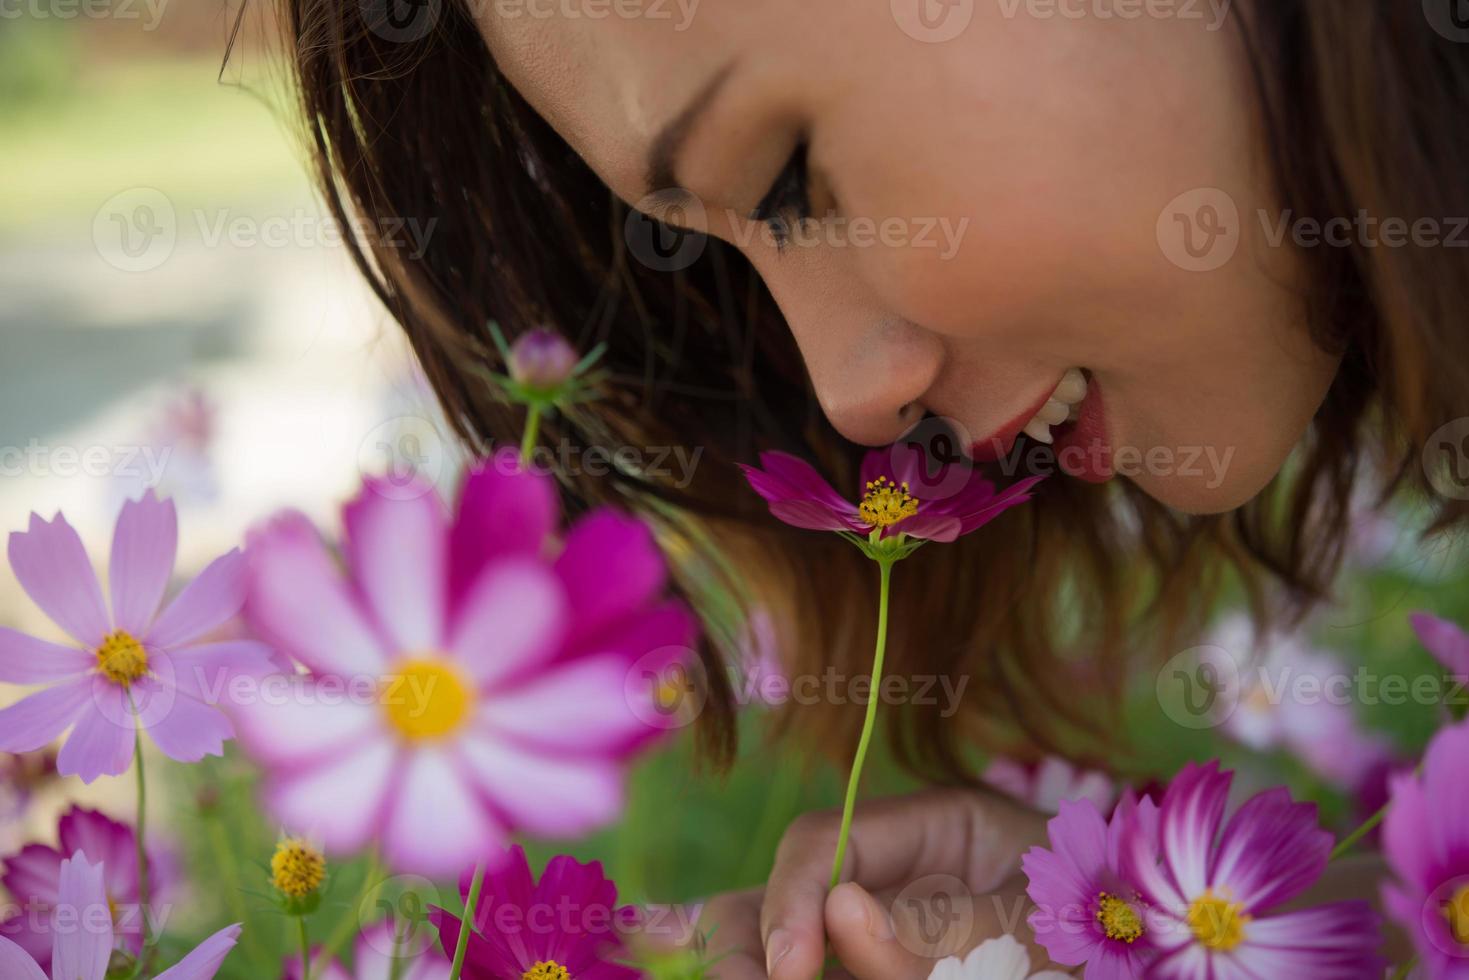 Close-up de mujer alegre que huele las flores del cosmos en un jardín. foto